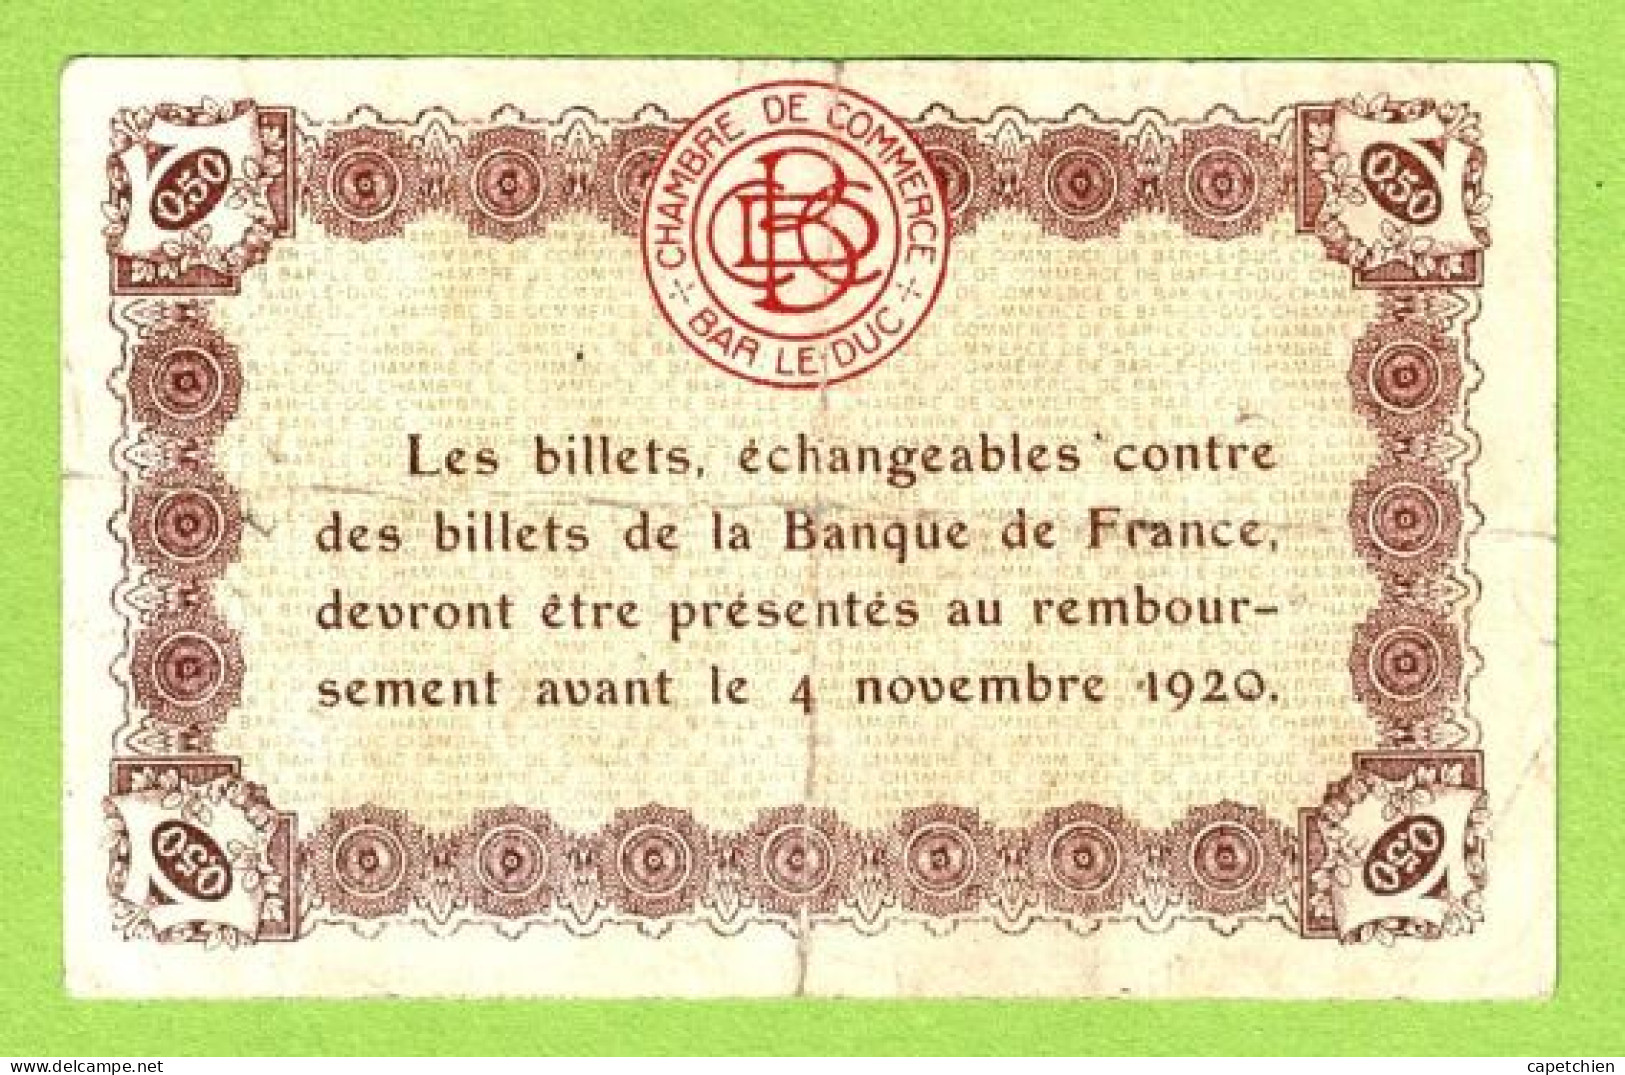 FRANCE / CHAMBRE DE COMMERCE / BAR LE DUC / 50 CENTIMES /  2 AOUT 1917  / 3ème EMISSION / N° 47255 - Chambre De Commerce